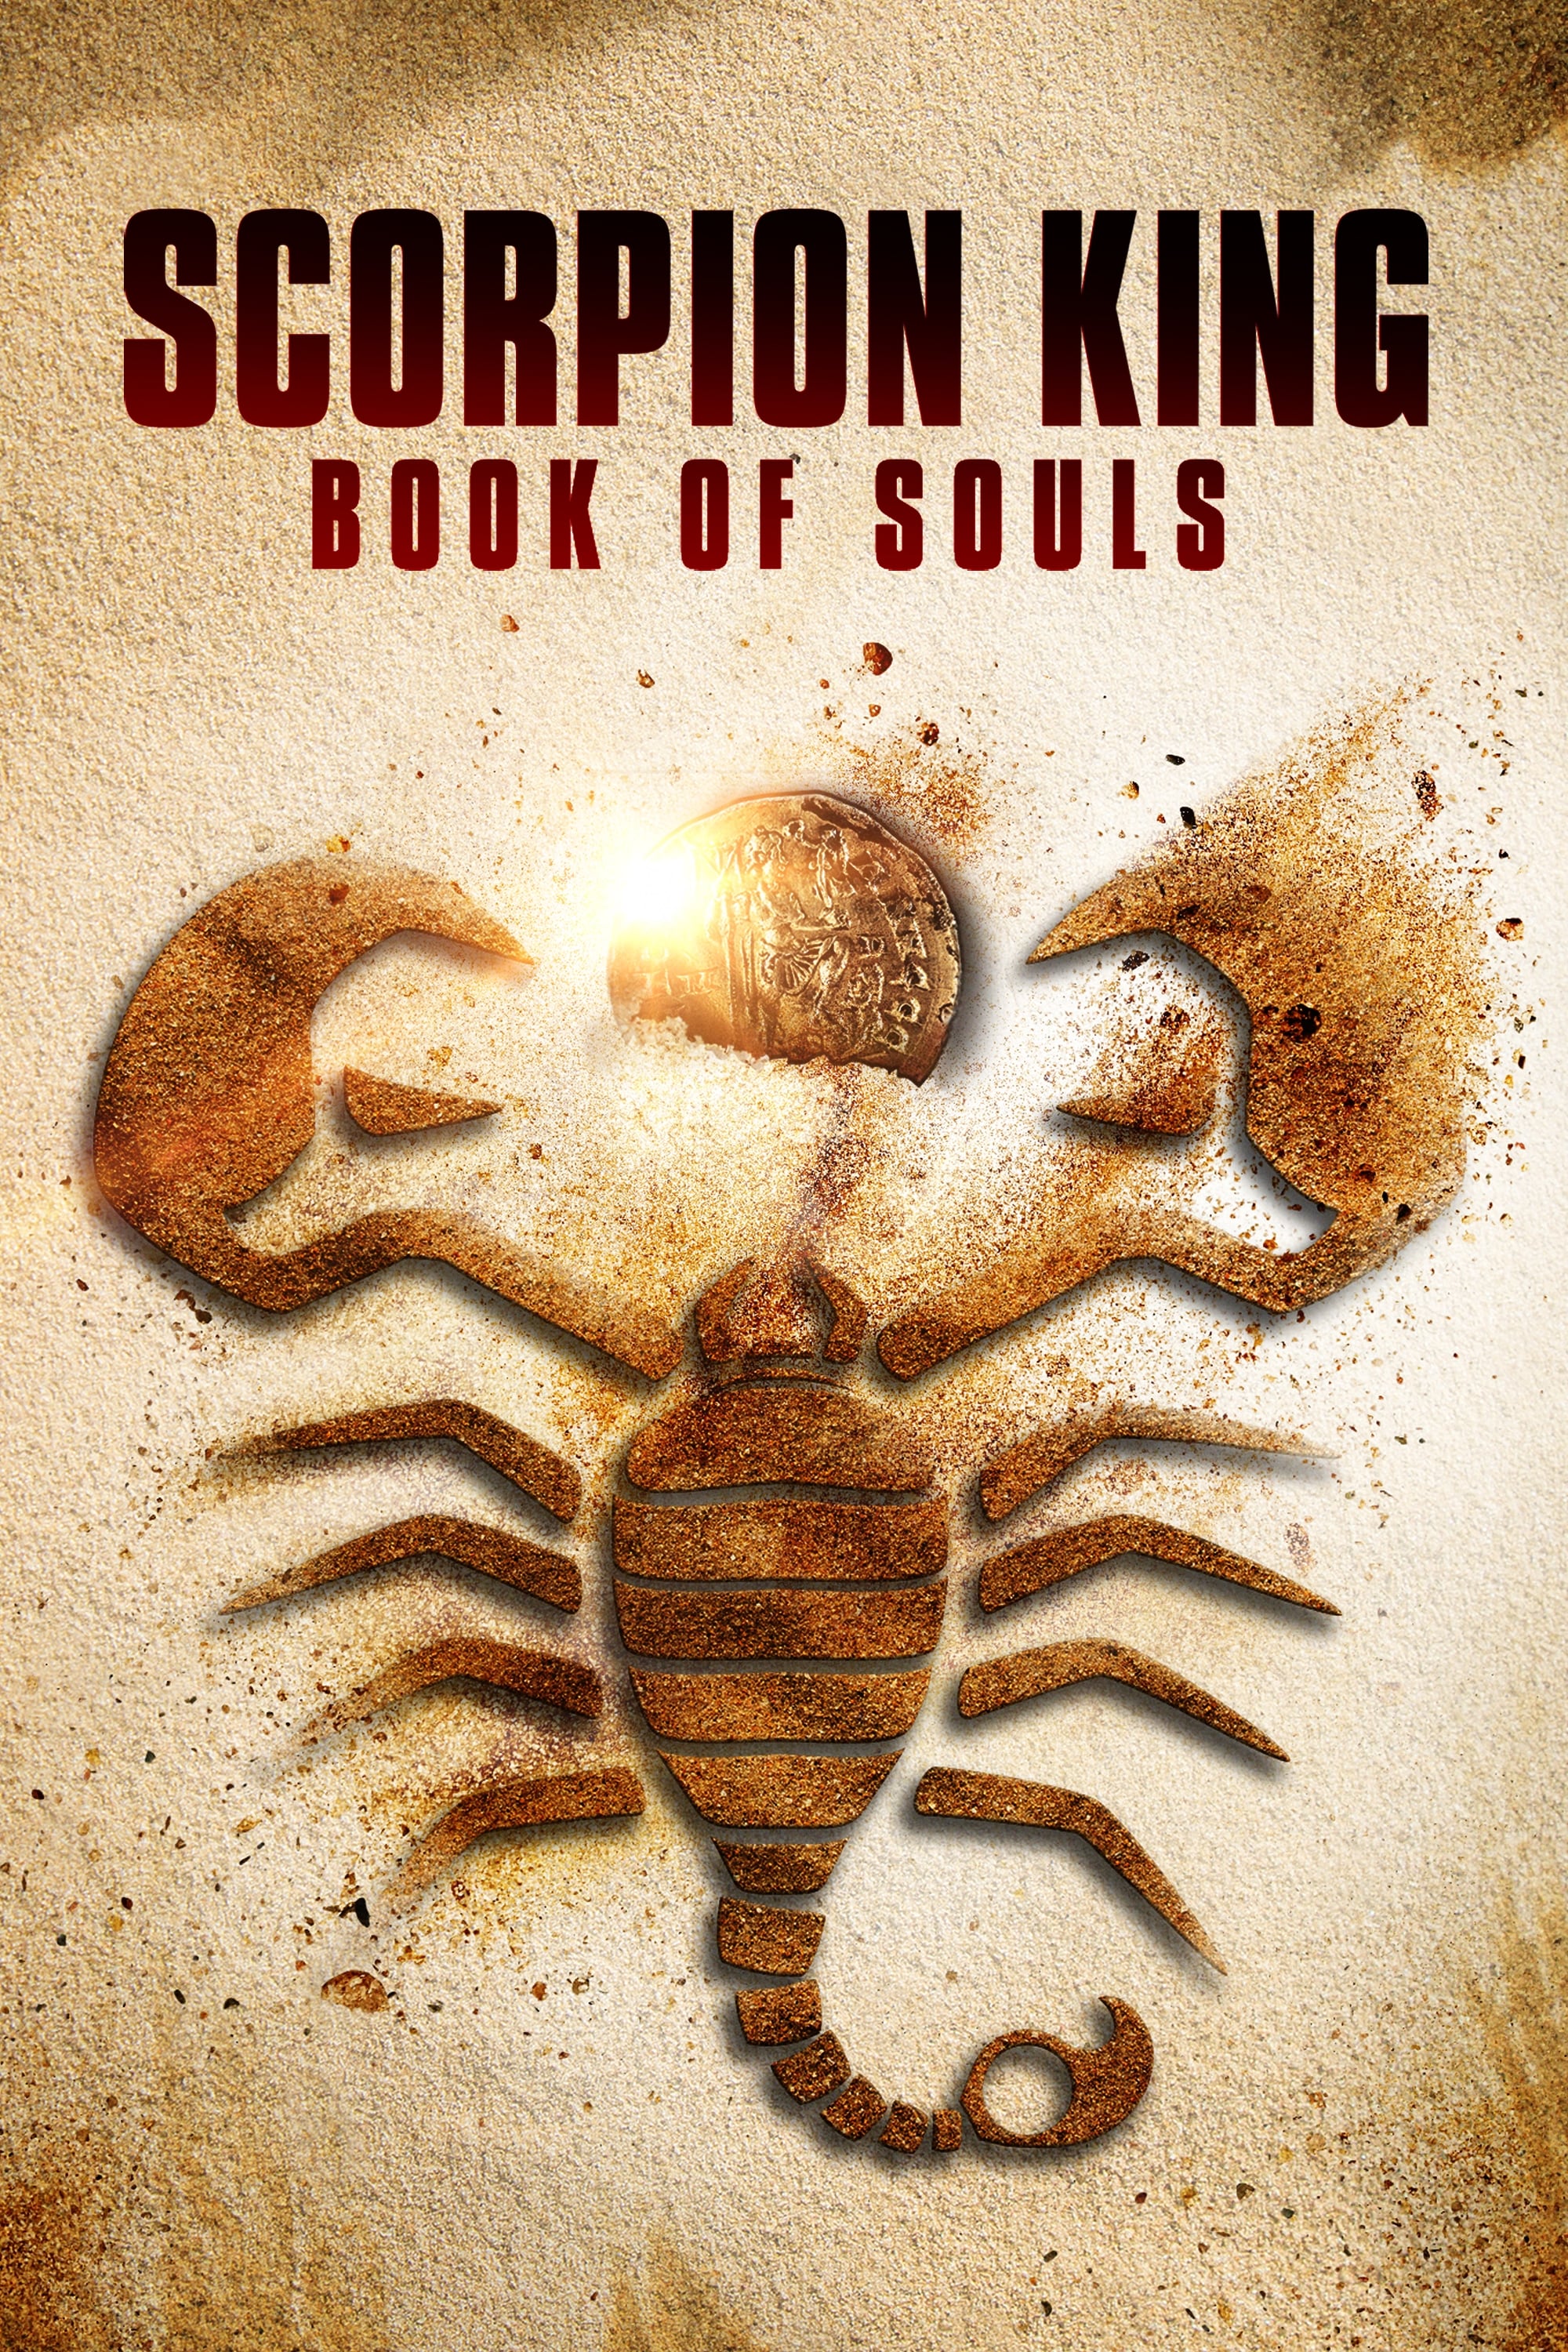 Vua Bọ Cạp: Quyển Sách Linh Hồn (The Scorpion King: Book of Souls) [2018]